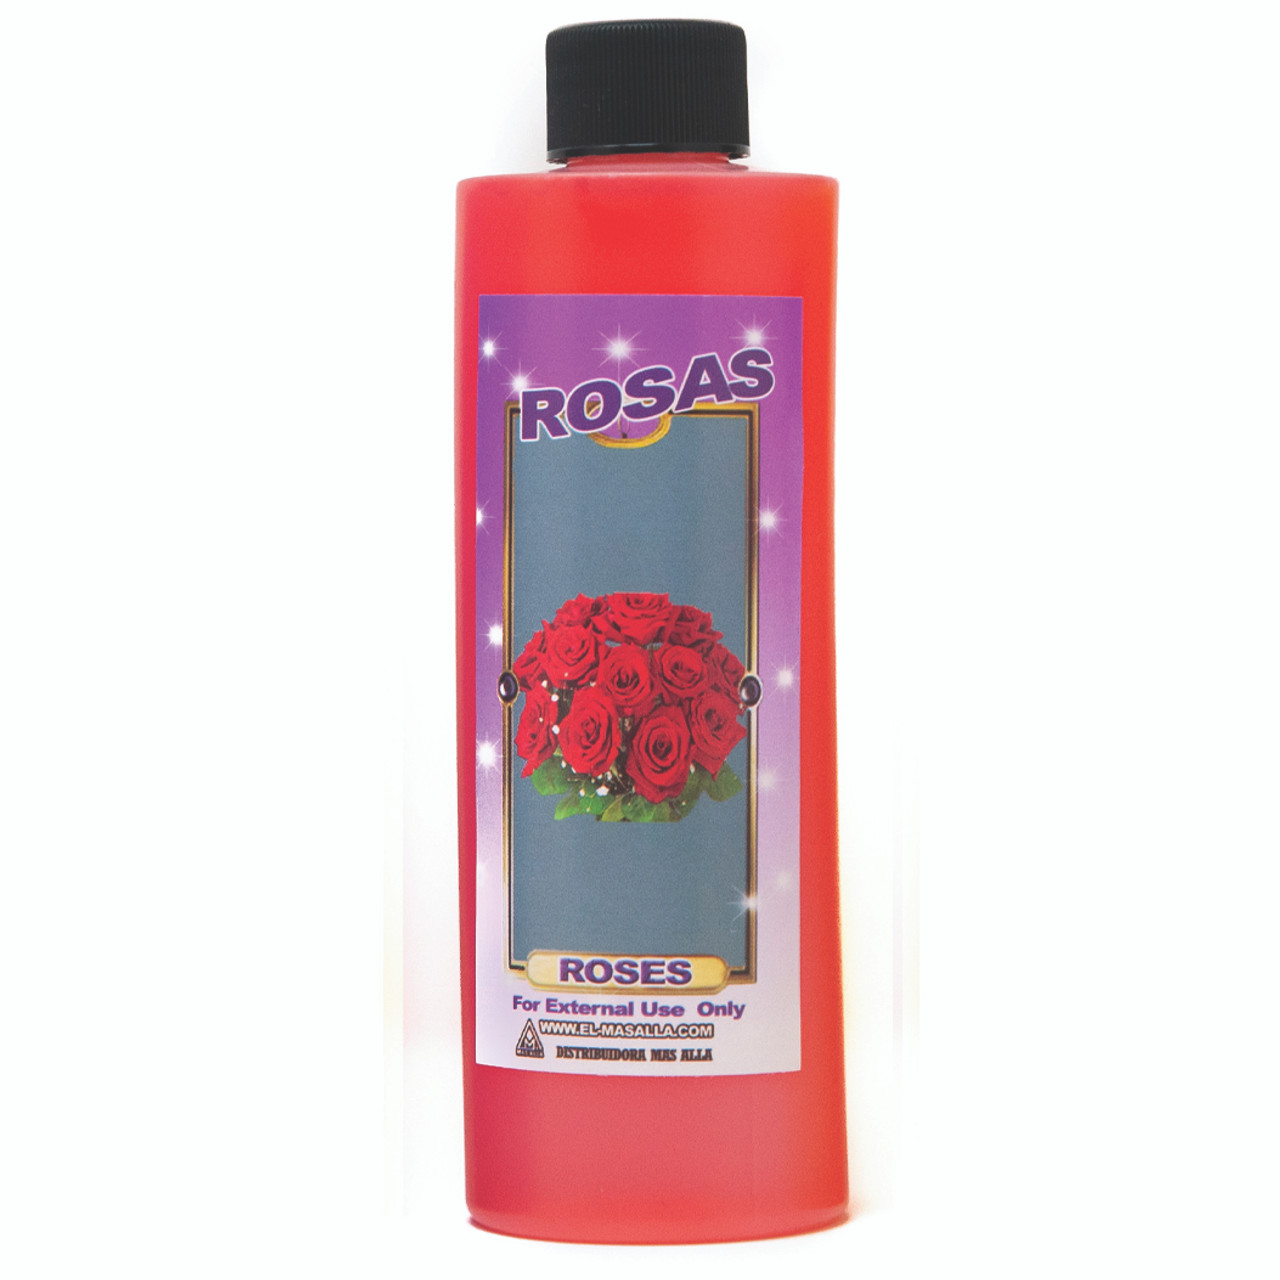 Limpia Y Despojo Rosas (Roses Bath)